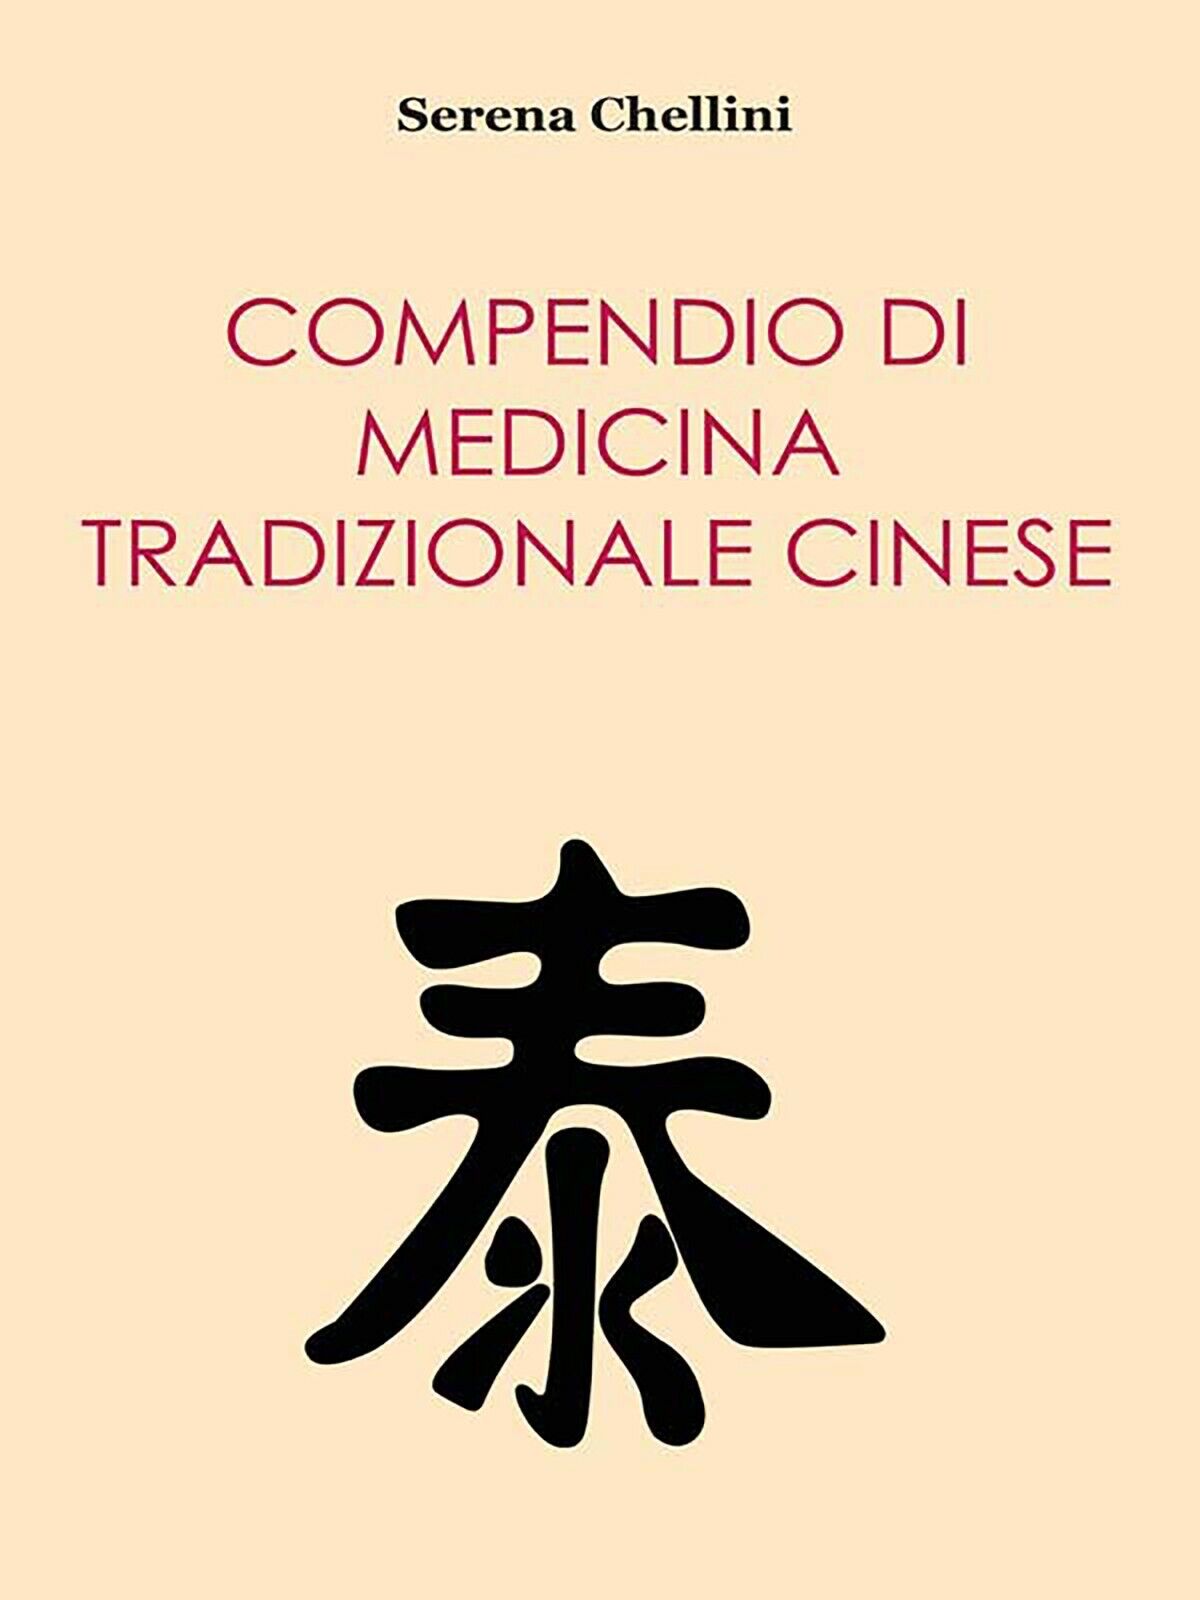 Compendio di medicina tradizionale cinese di Serena Chellini,  2014,  Youcanprin